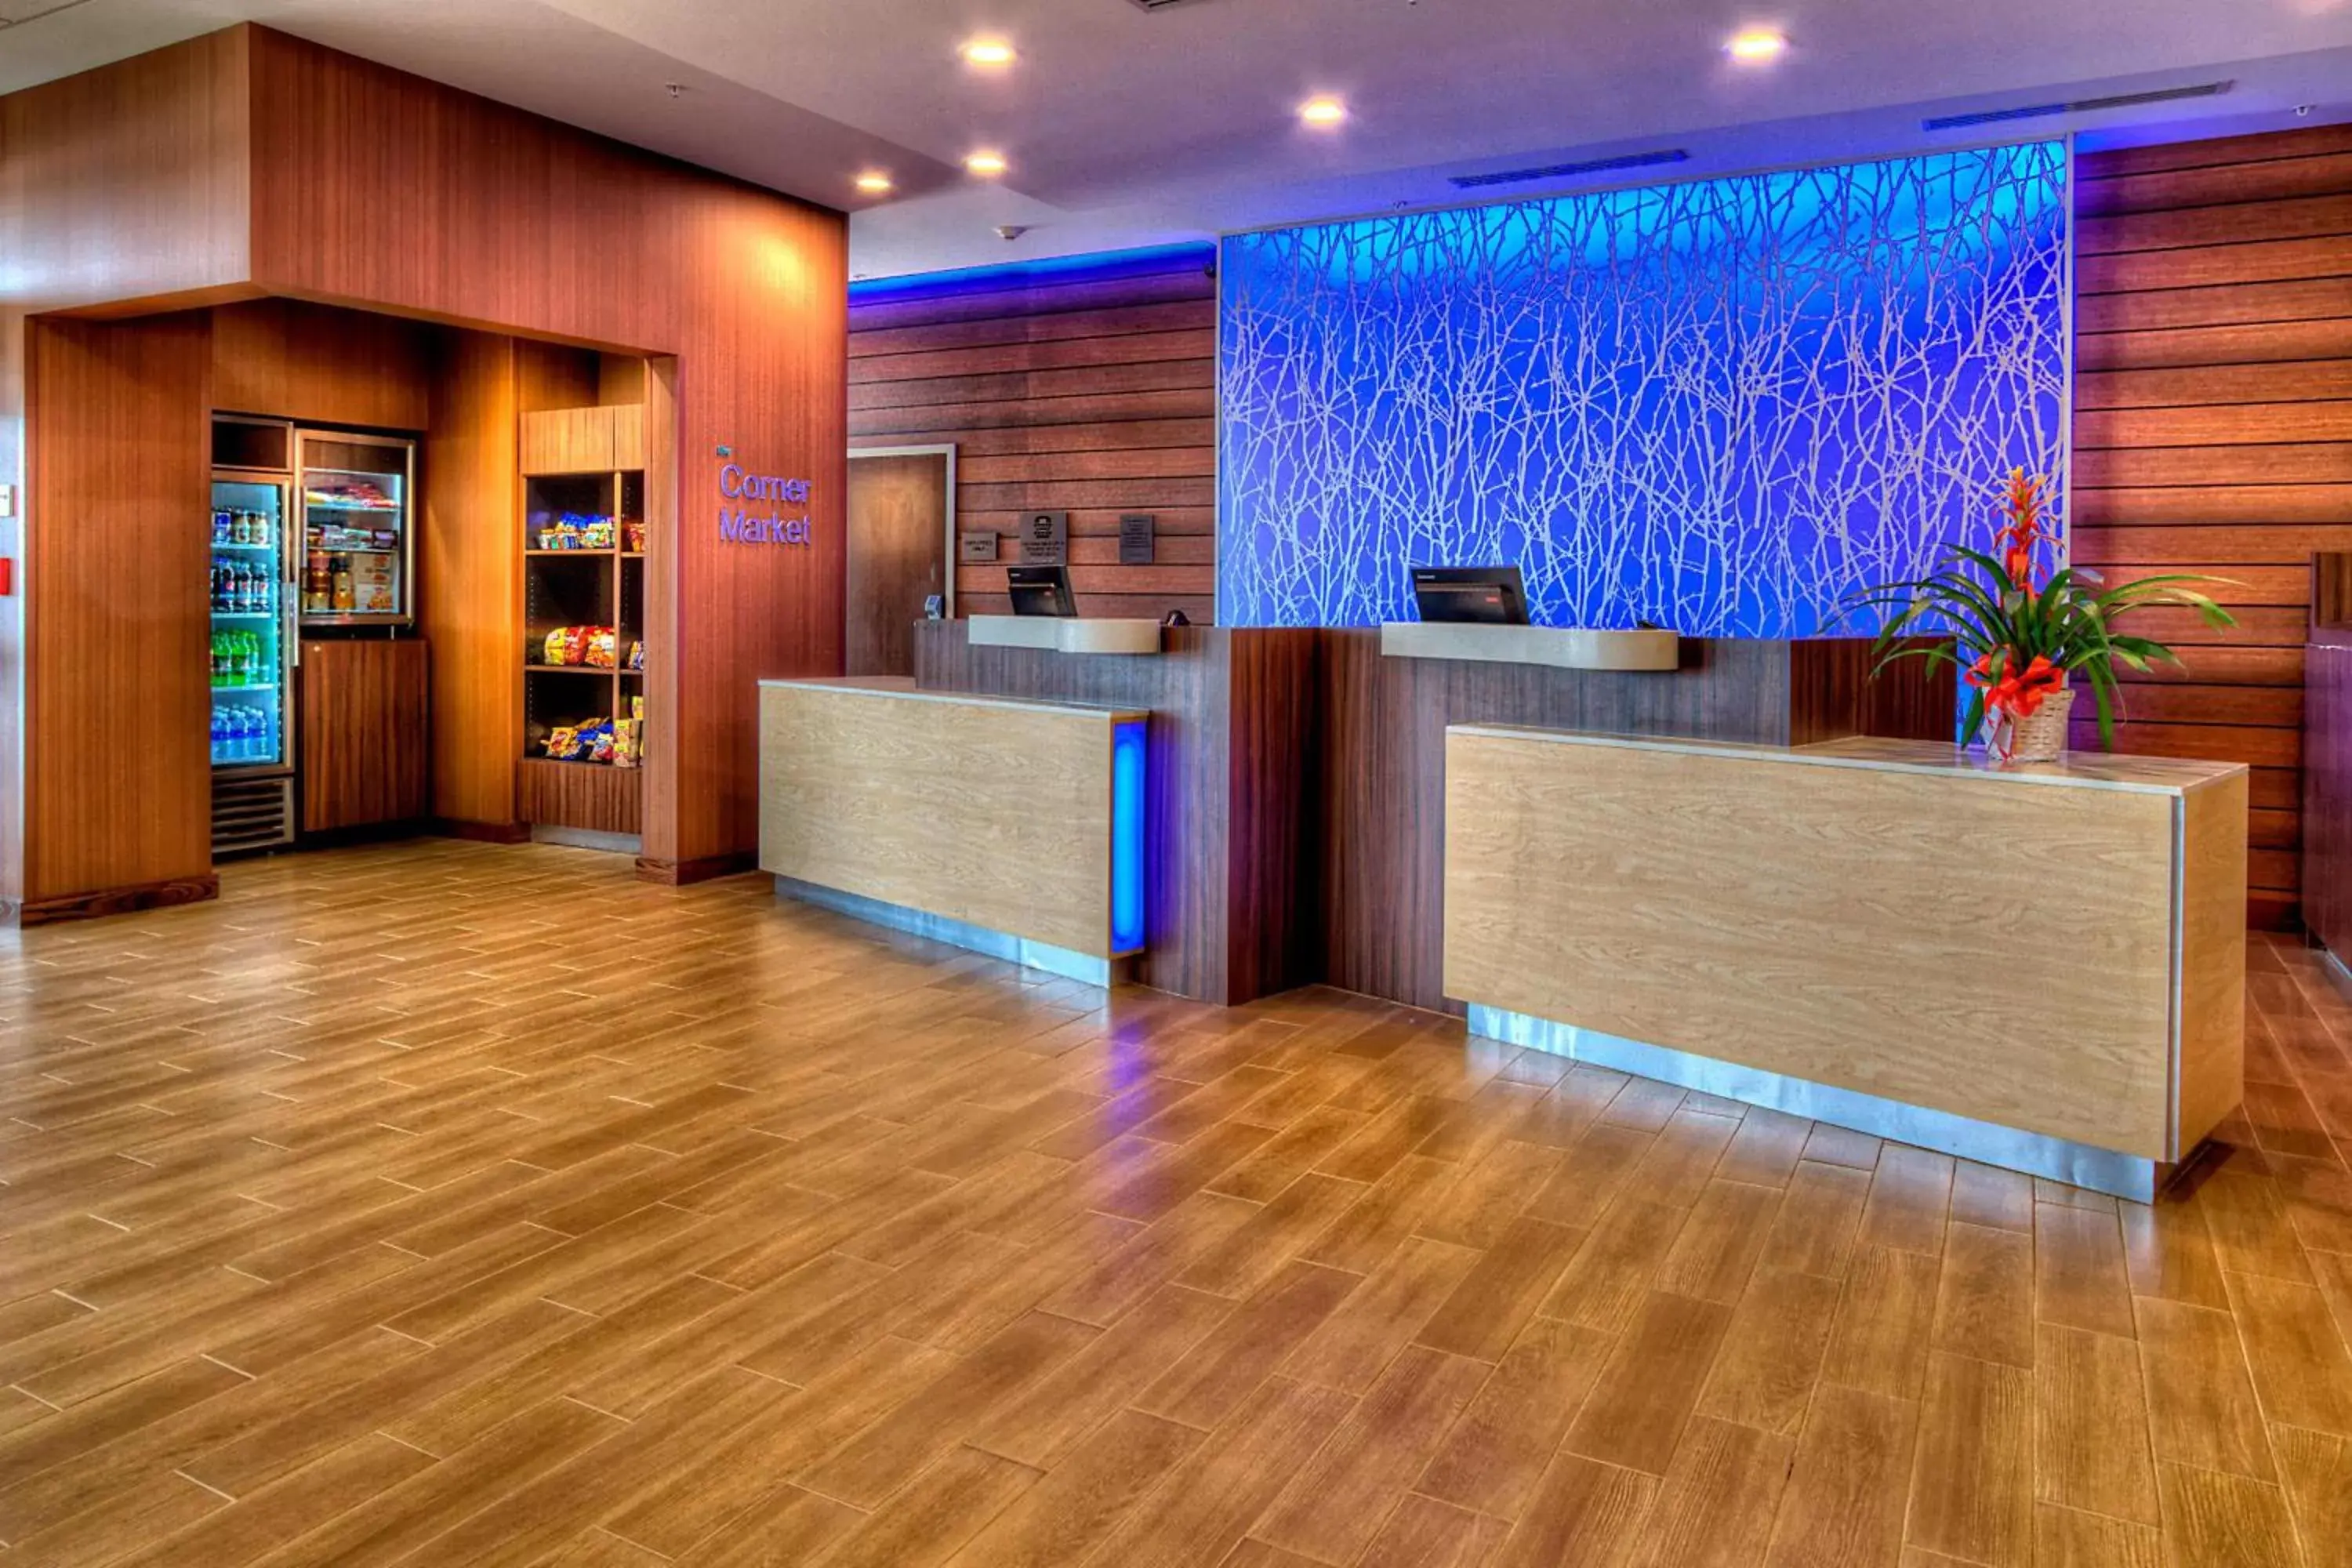 Lobby or reception, Lobby/Reception in Fairfield Inn and Suites Oklahoma City Yukon